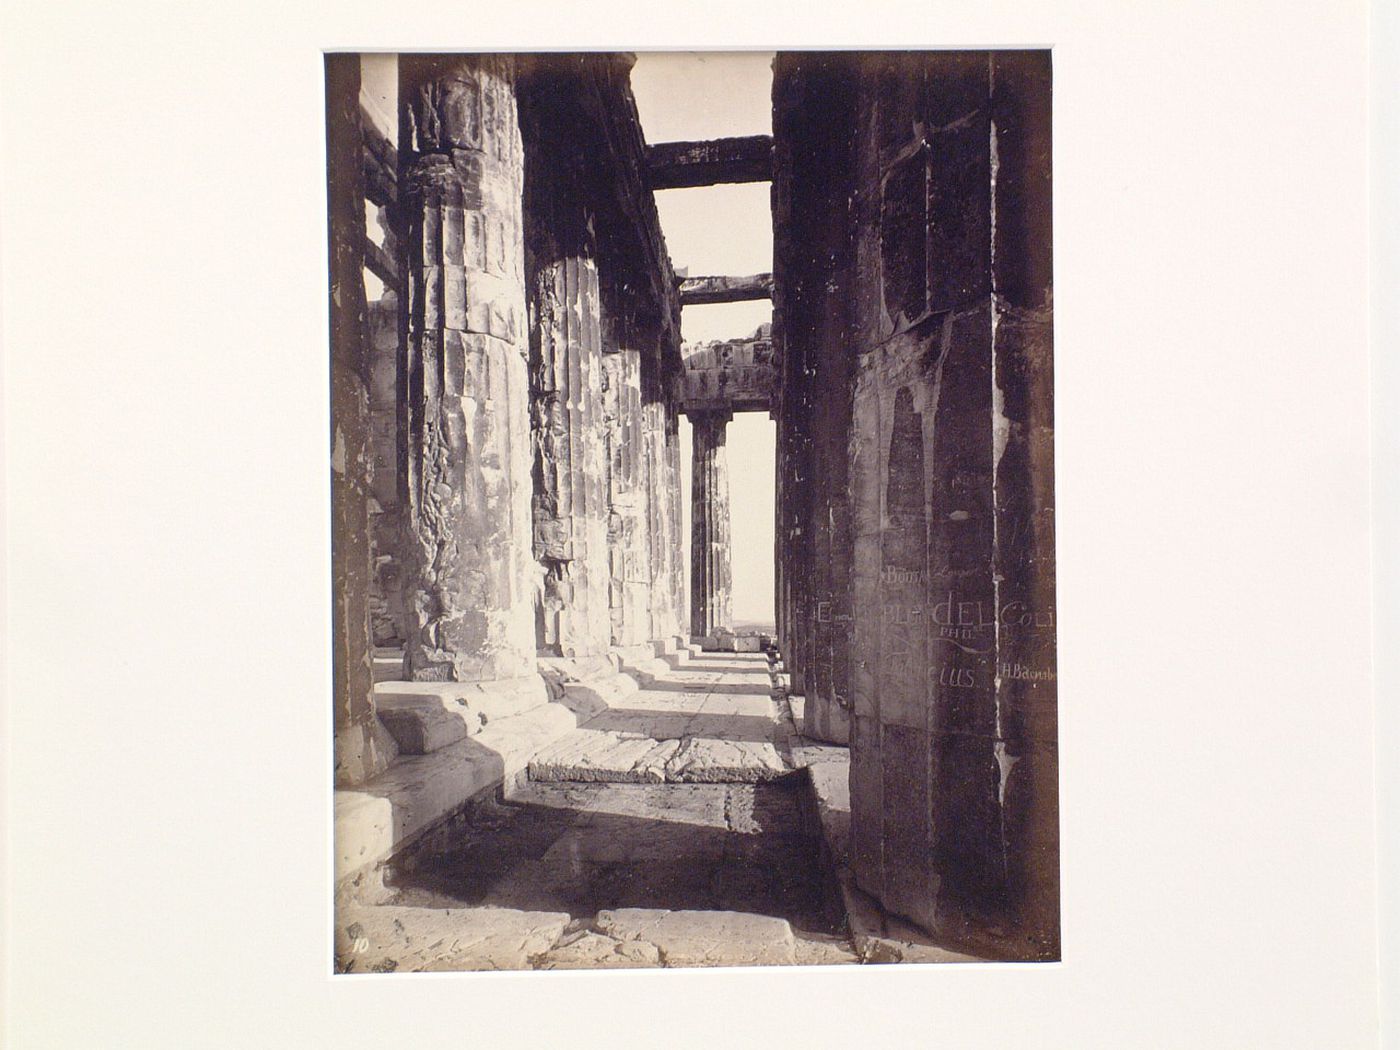 X. Portico of the Parthenon